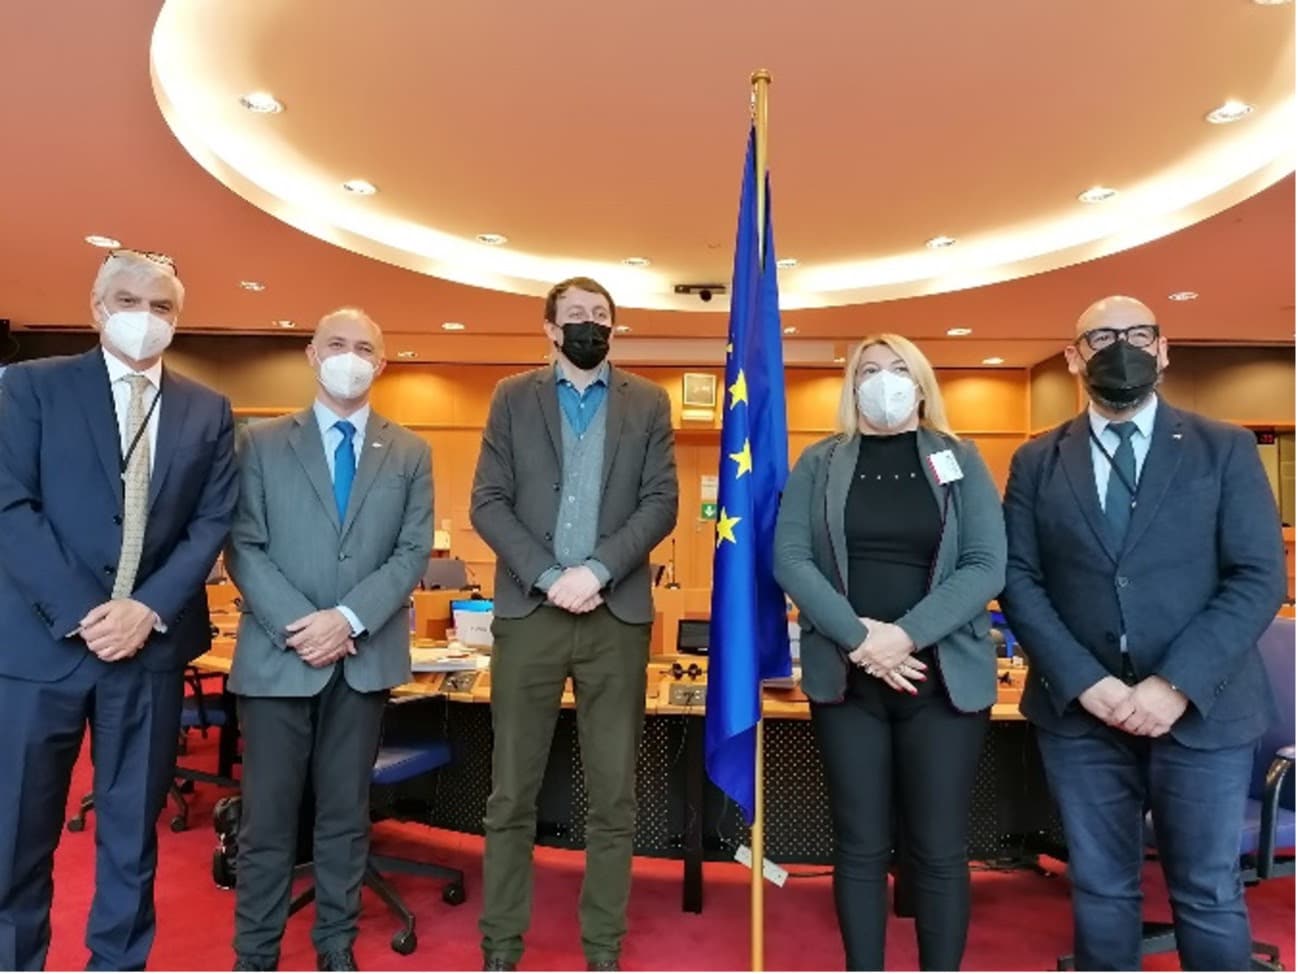 “Concluyeron importantes días de trabajo en relación a la agenda Malvinas en la Unión Europea”, confirmó Bertone